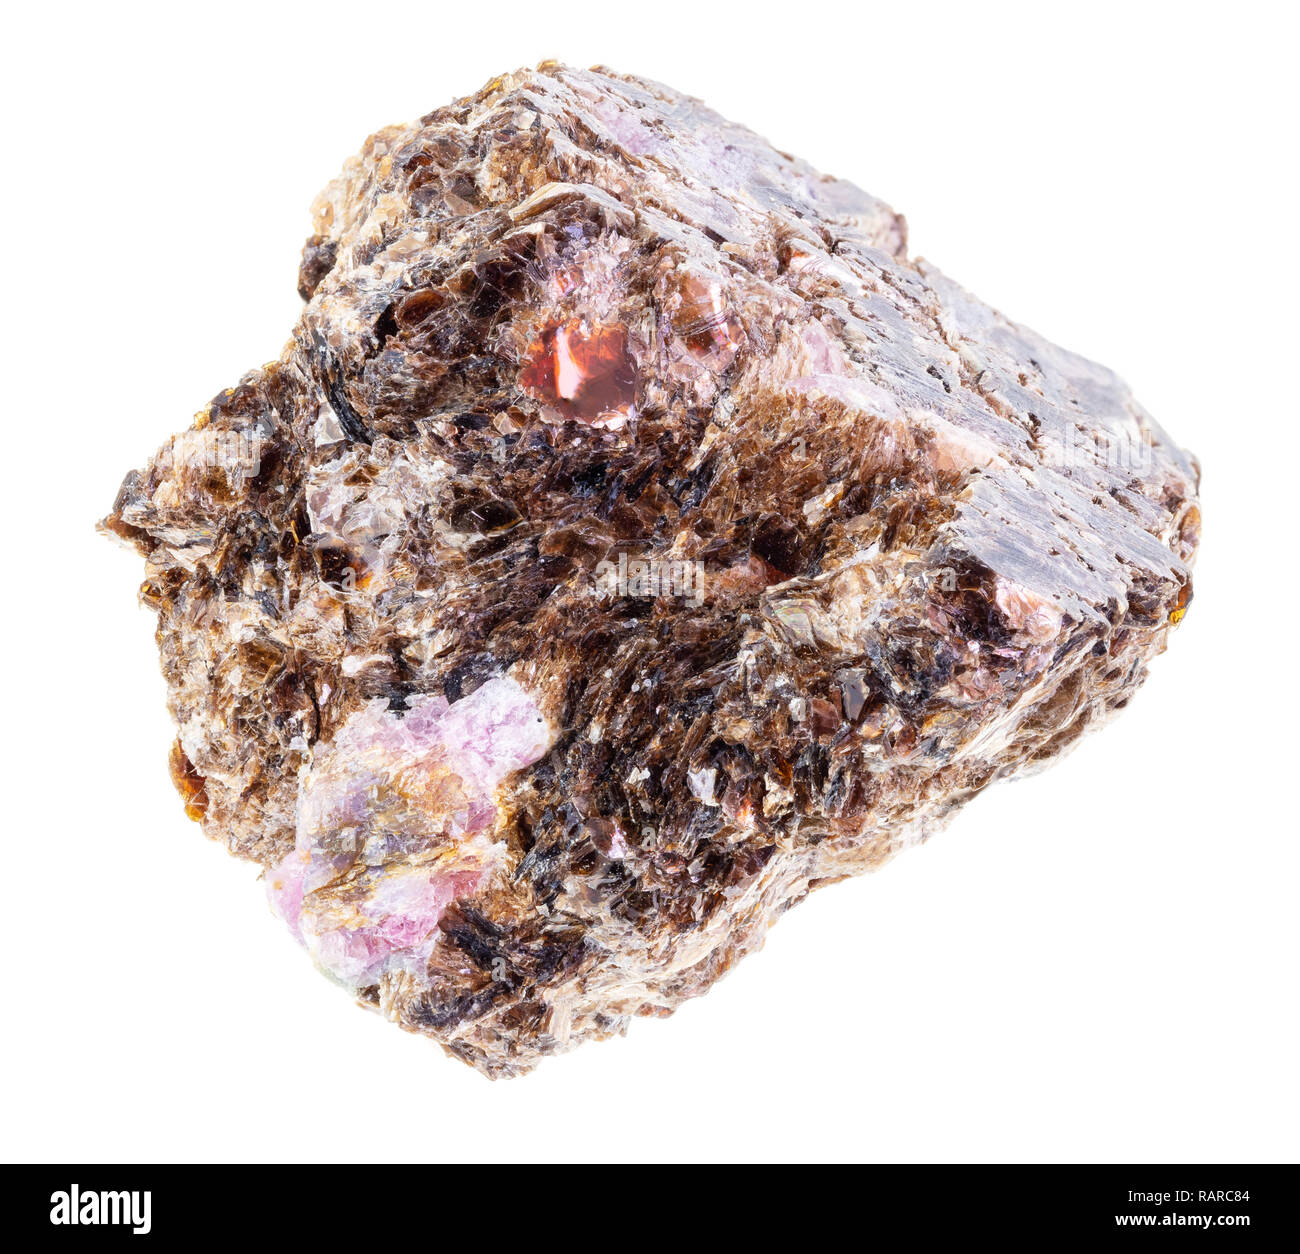 Makrofotografie von natürlichen Mineral aus geologische Sammlung - Korund Kristalle in raw Phlogopit (Magnesium Glimmer) Stein auf weißem Hintergrund Stockfoto